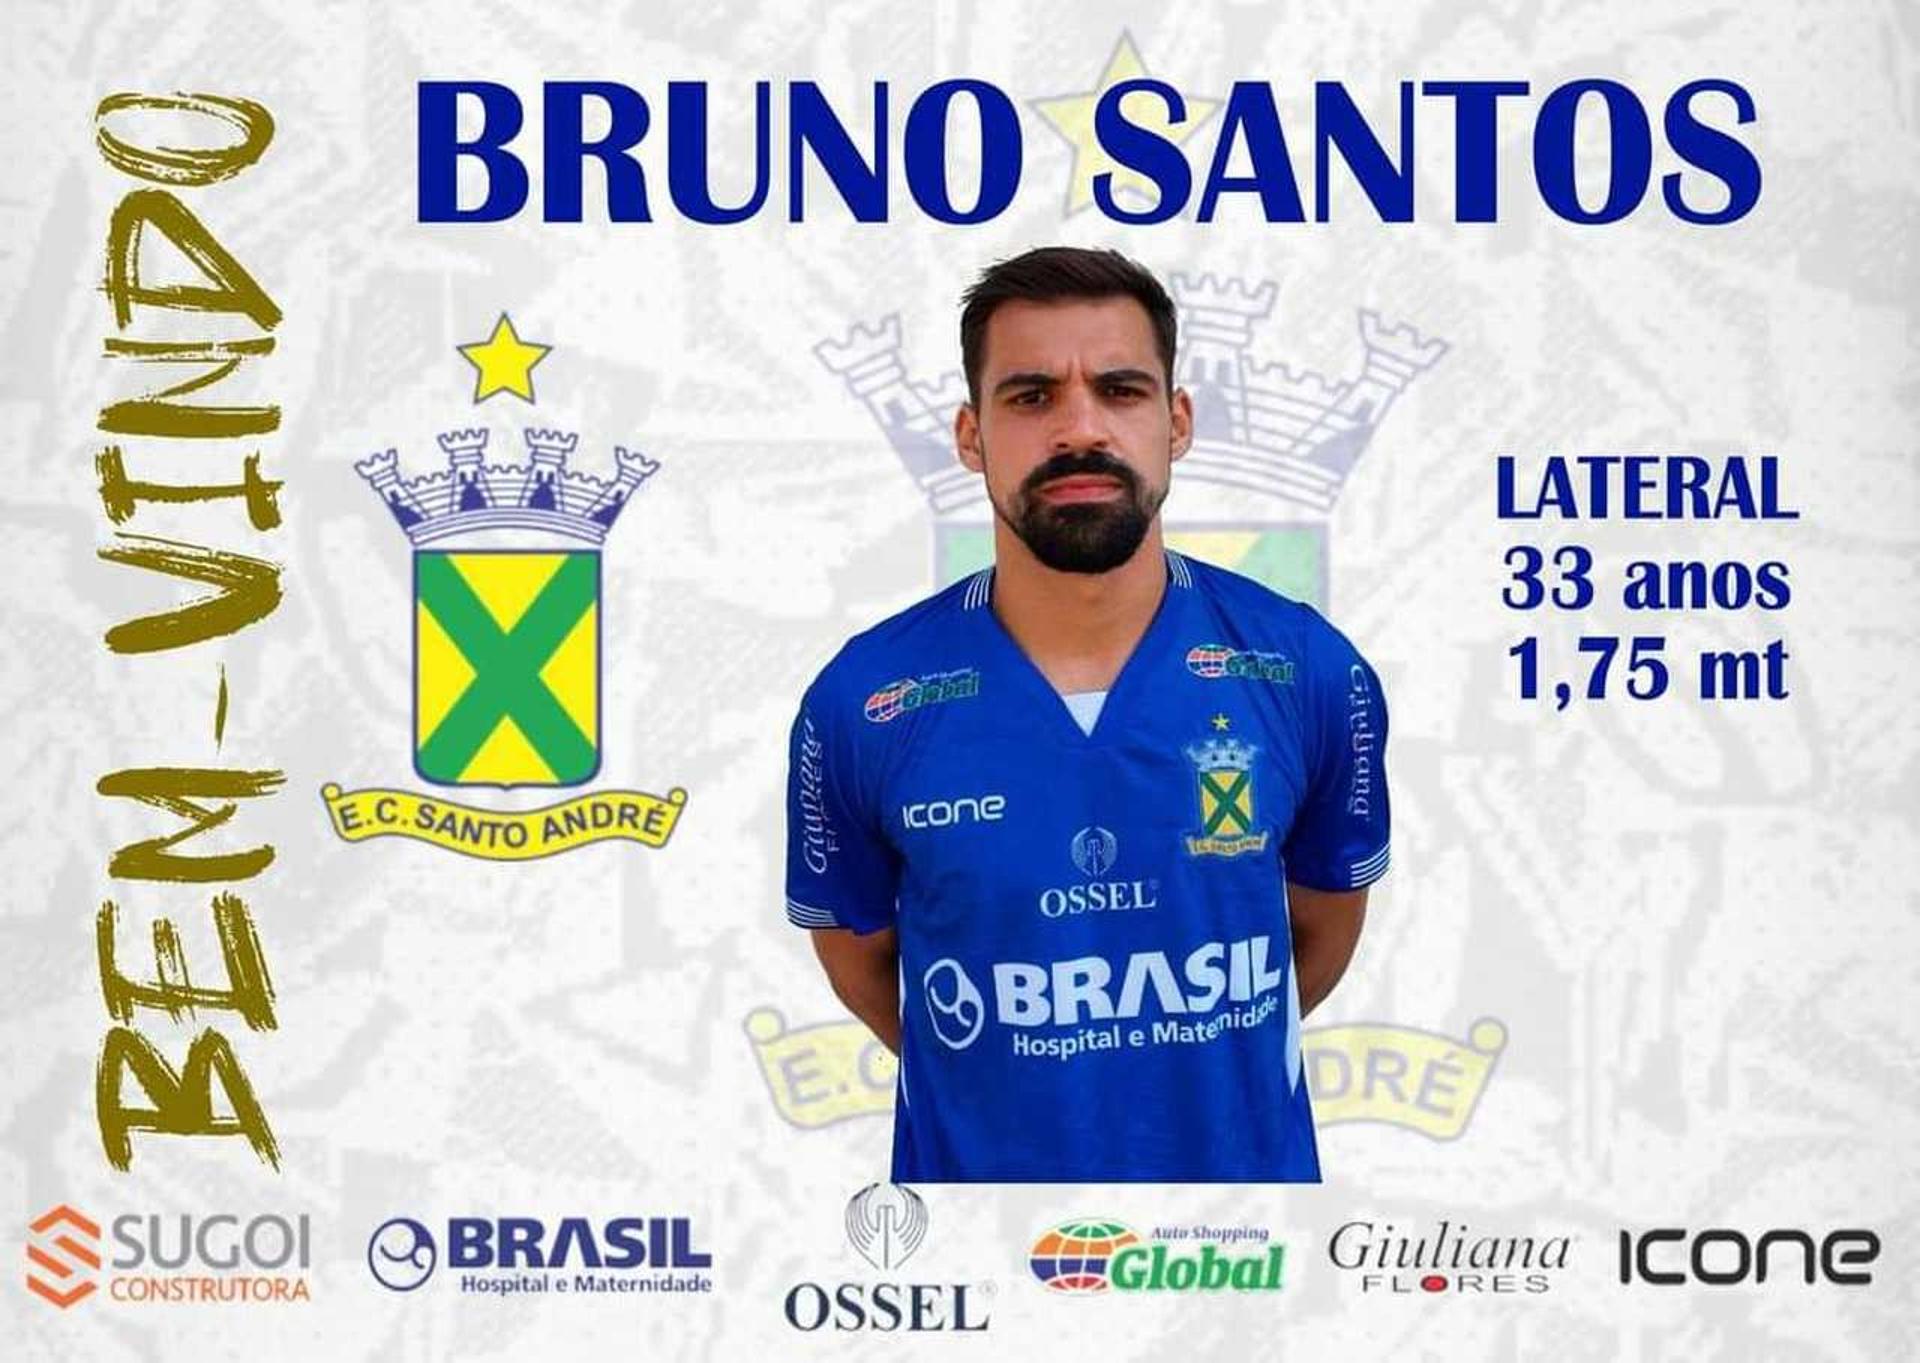 Bruno Santos Santo André